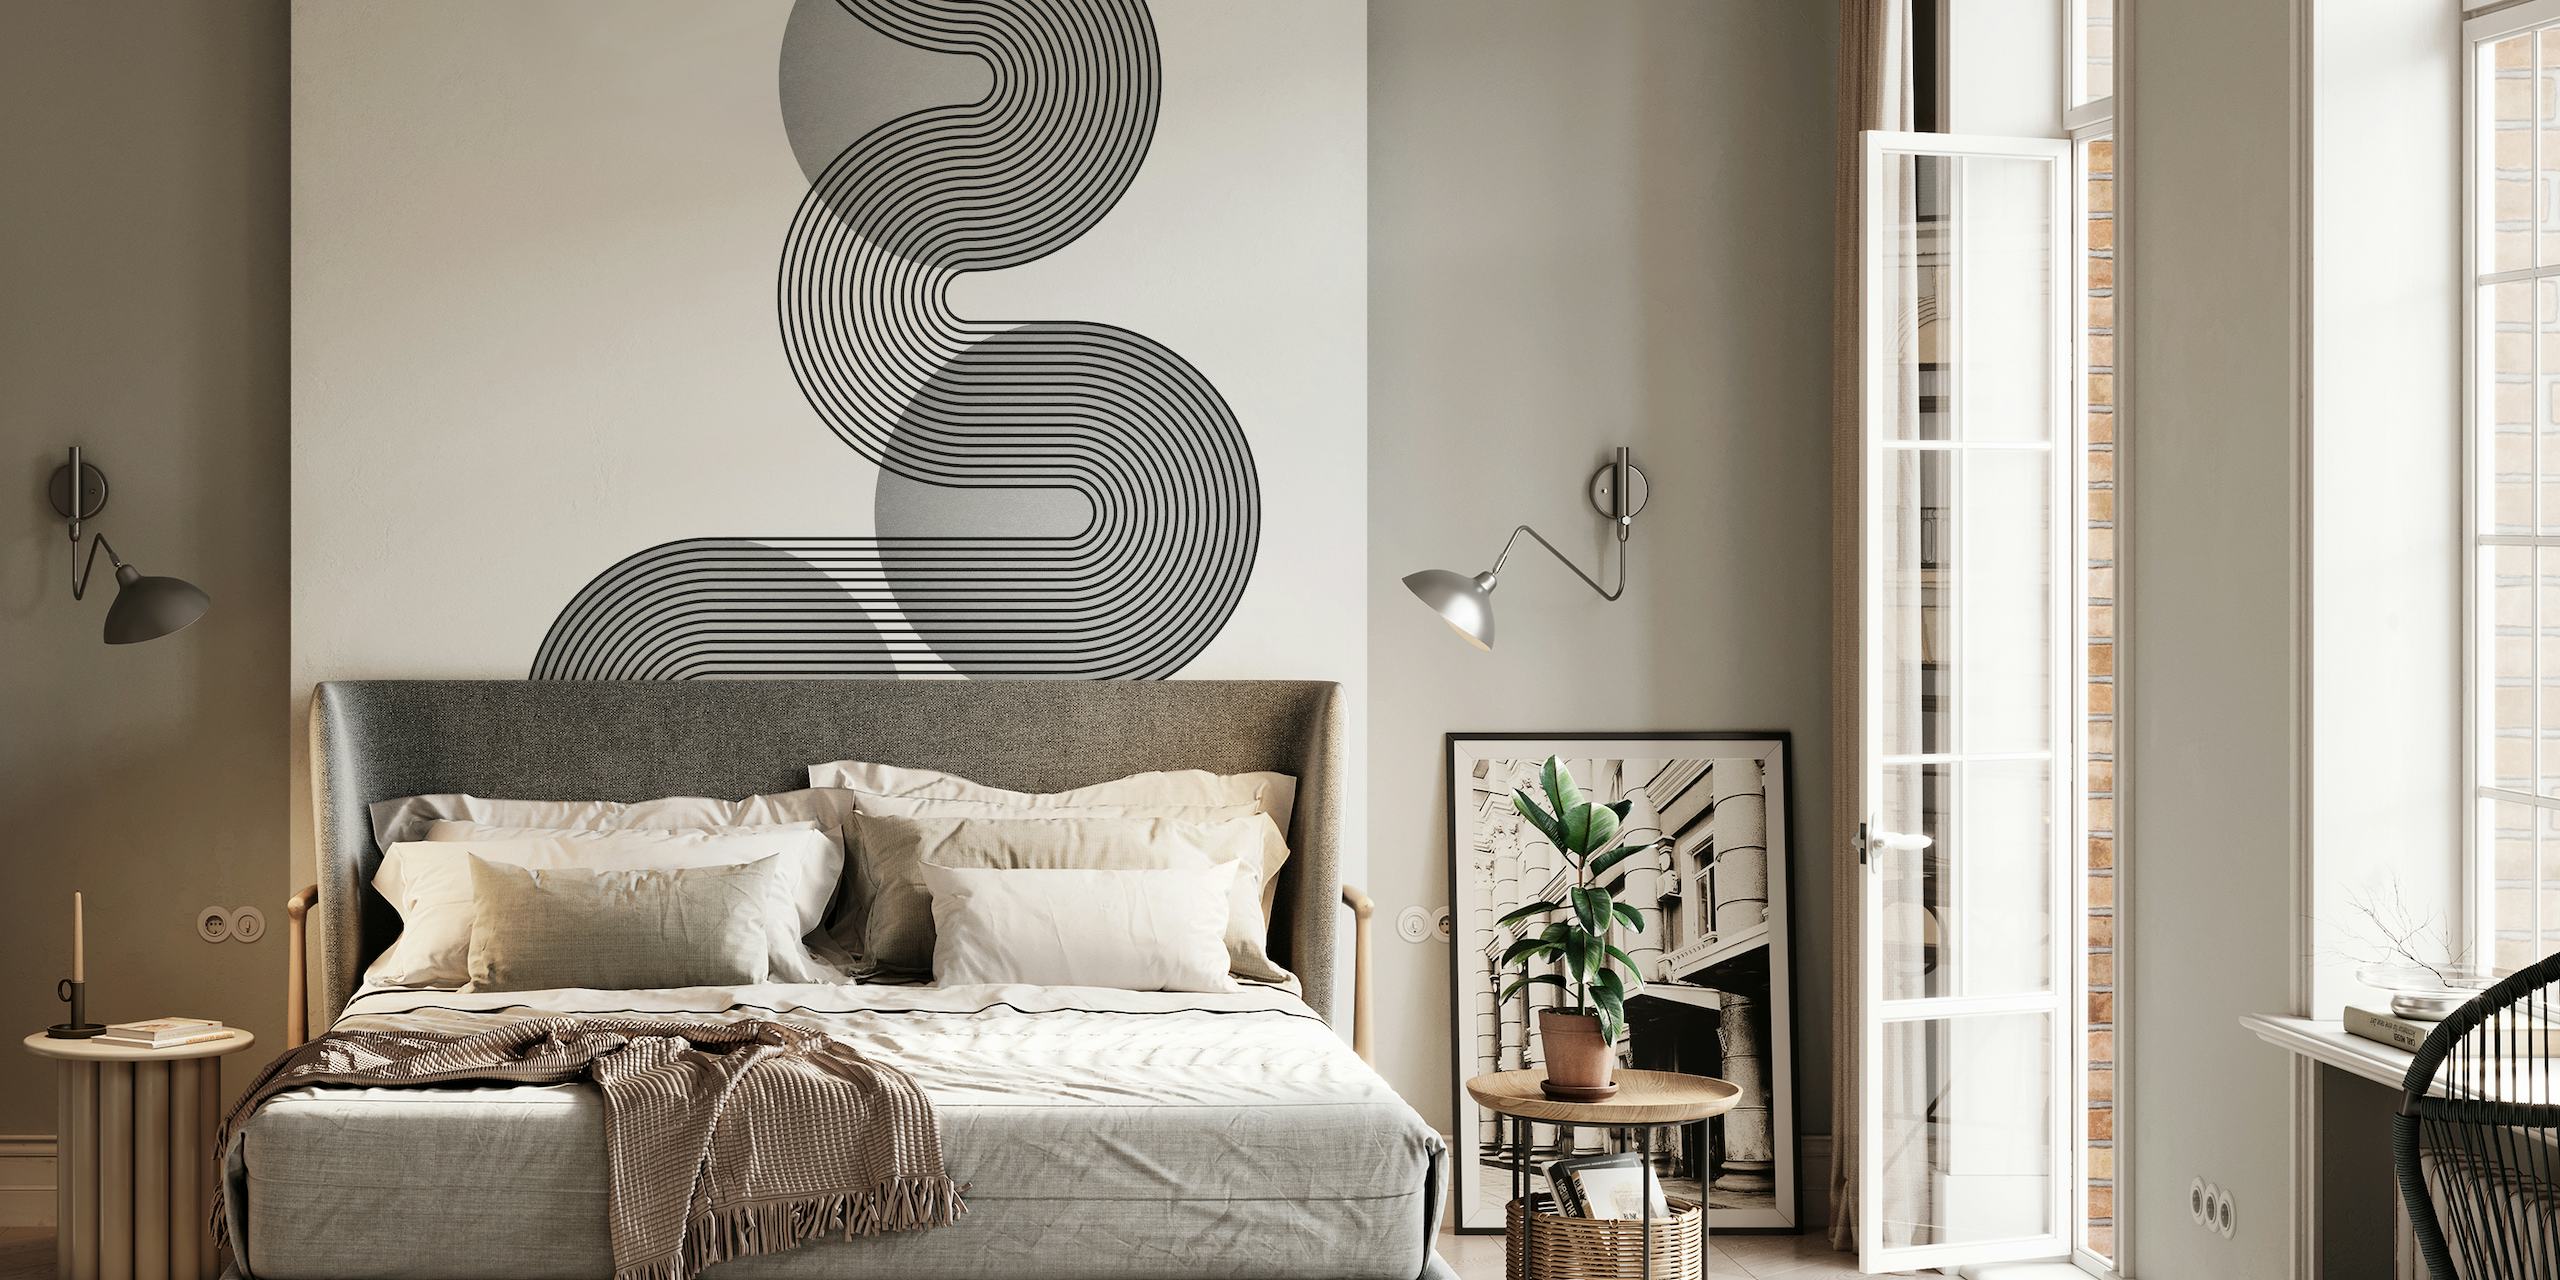 Jednobojni zidni mural inspiriran Bauhausom s isprepletenim geometrijskim oblicima u platinastim nijansama